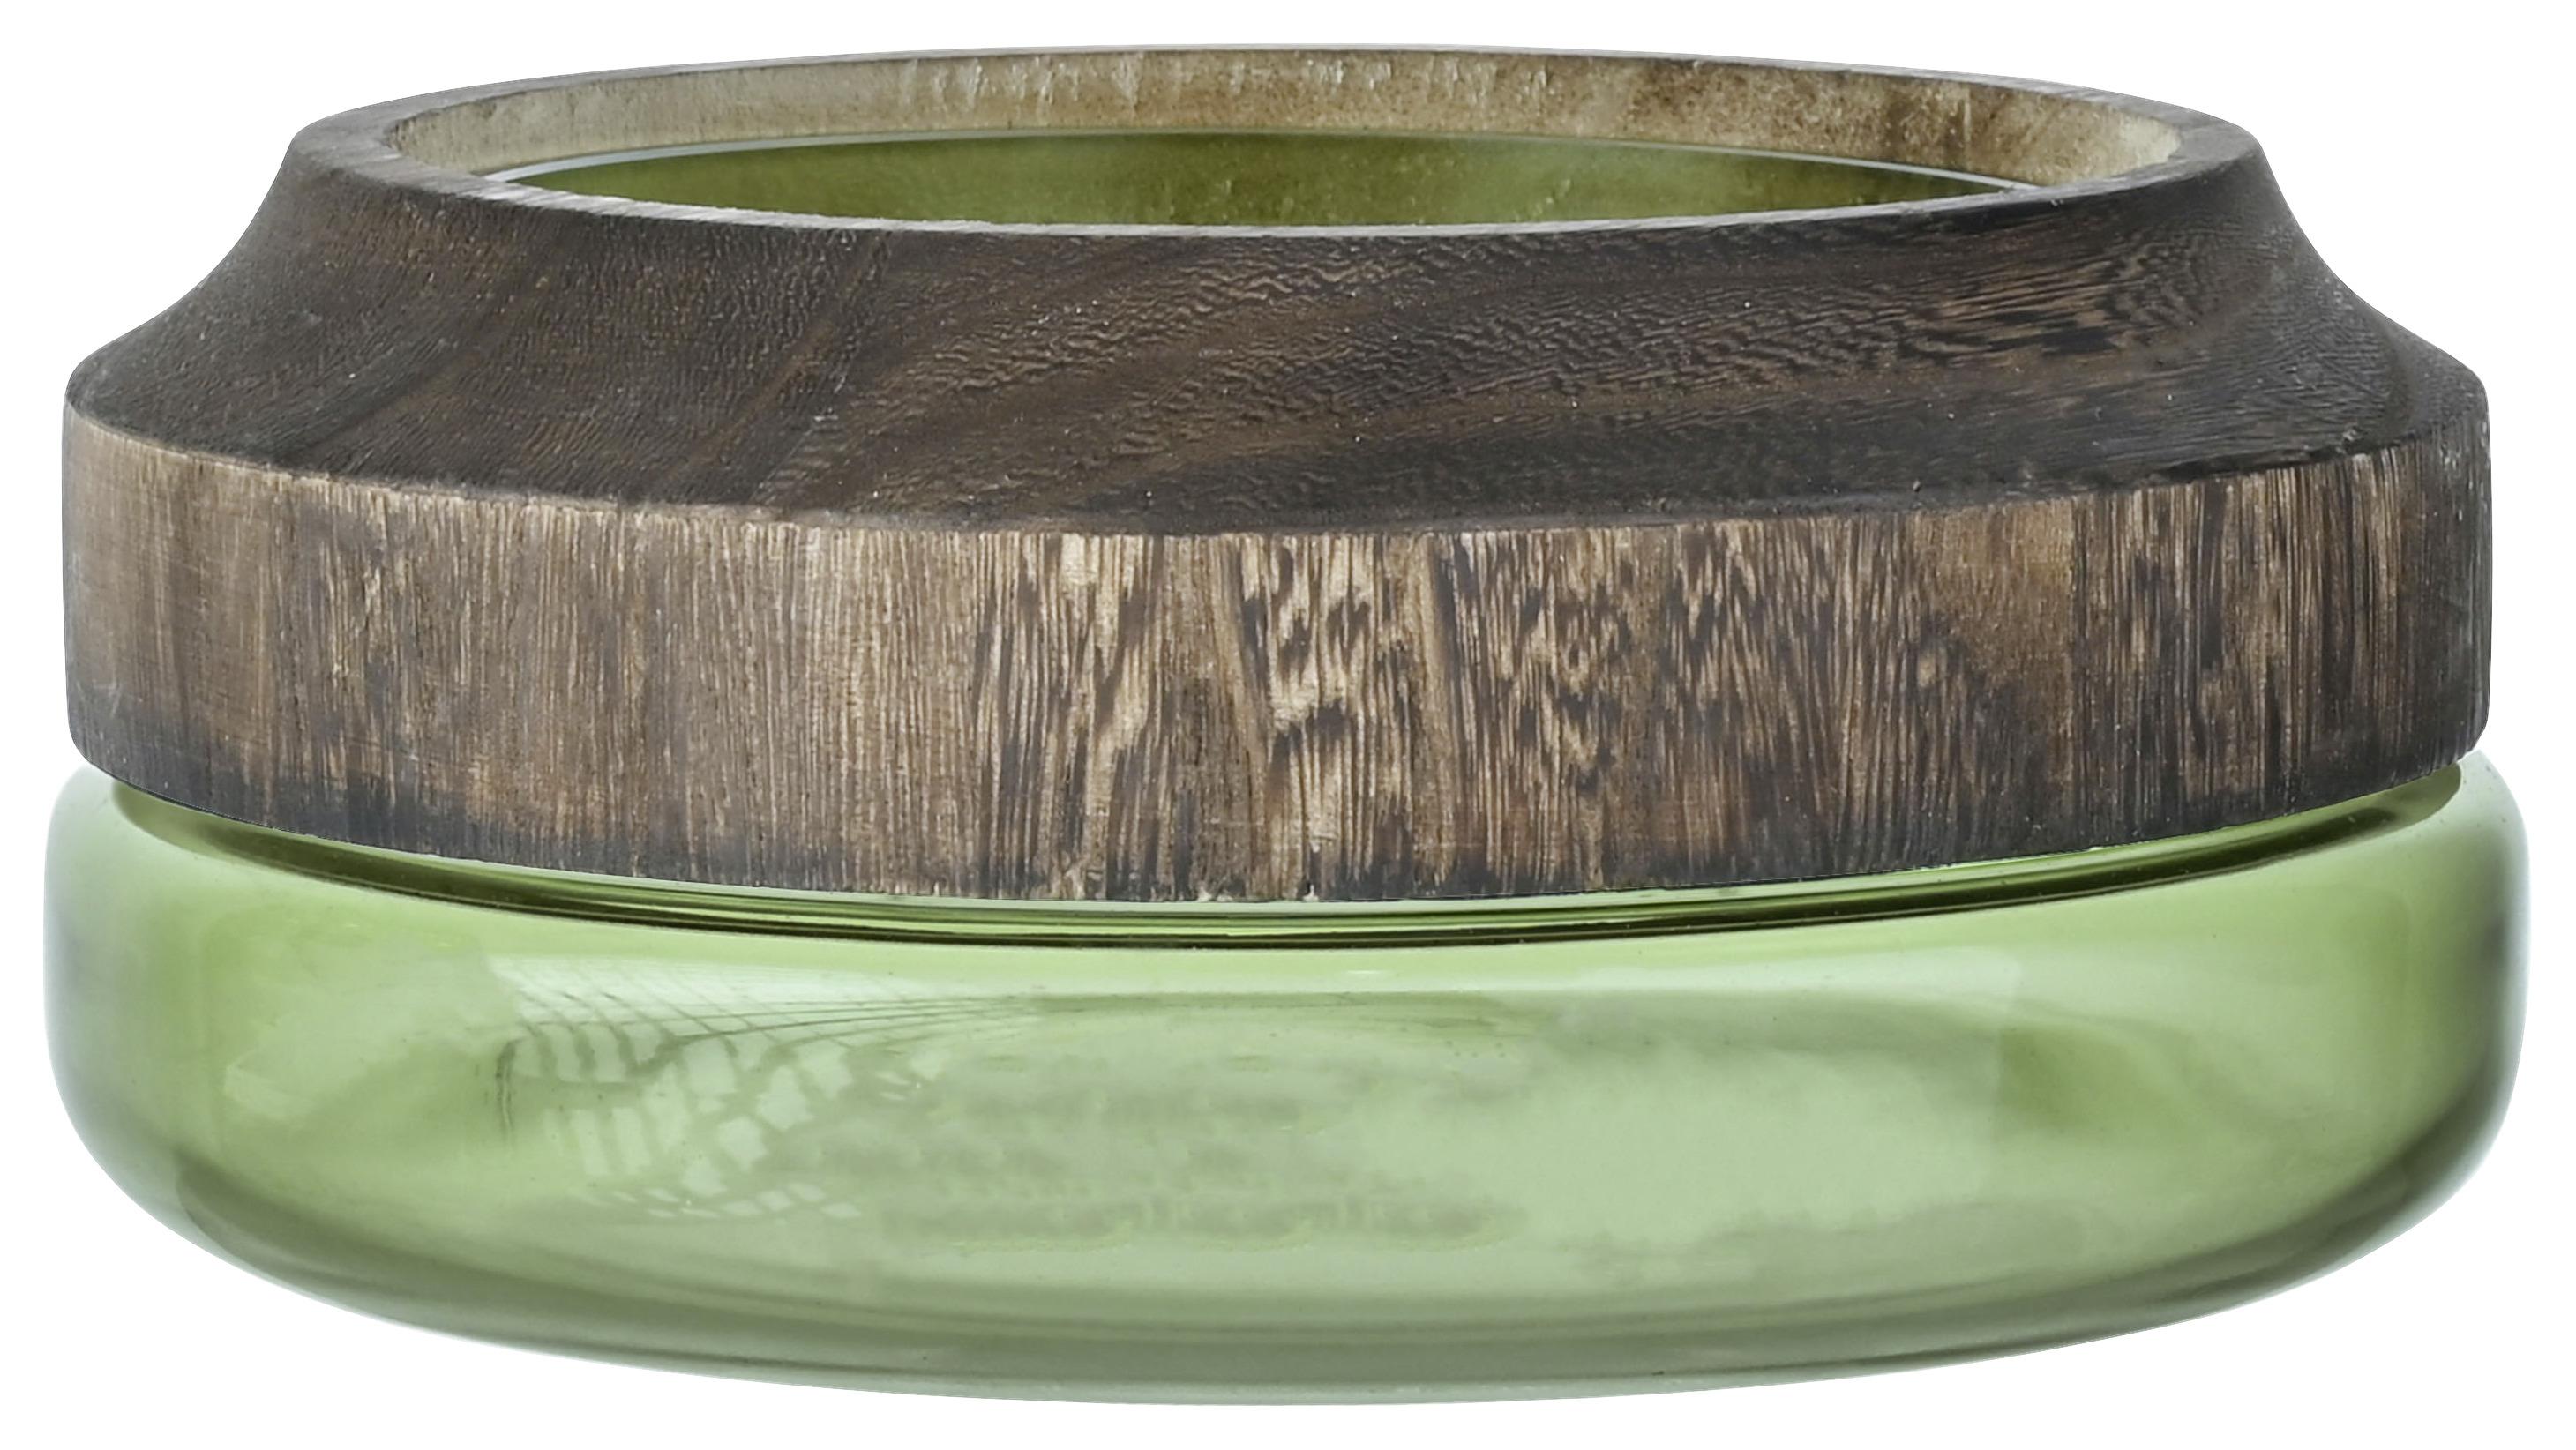 Dekoračná Miska Wood, 26/11 Cm - prírodné farby/zelená, drevo/sklo (26/11cm) - Premium Living